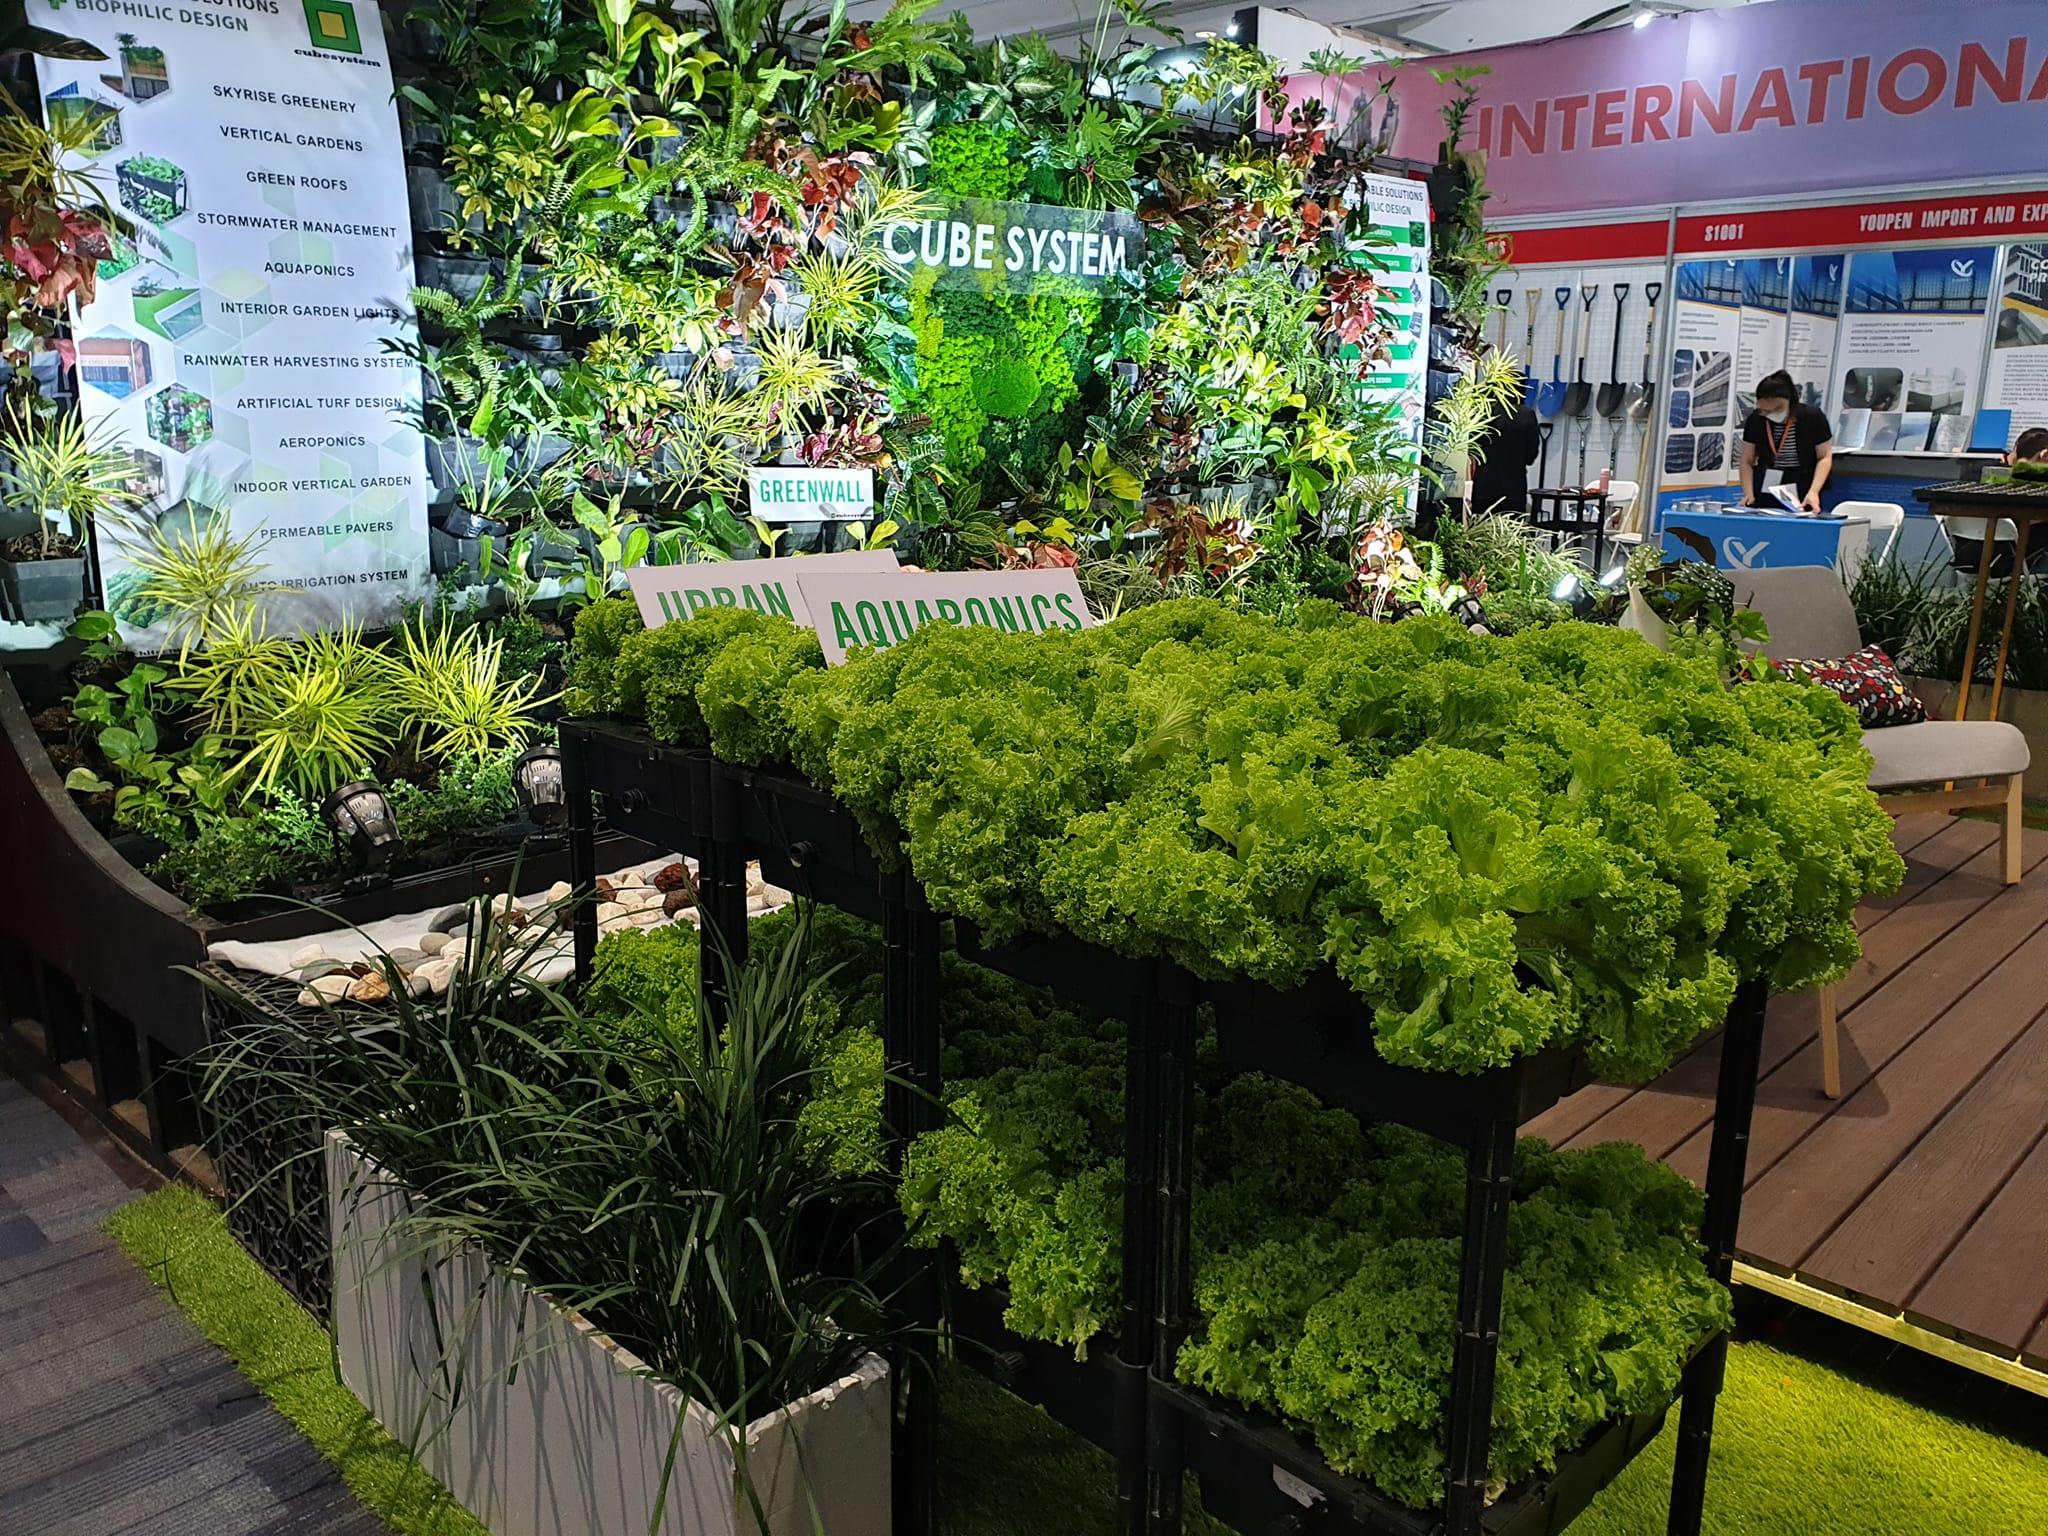 urban farming system